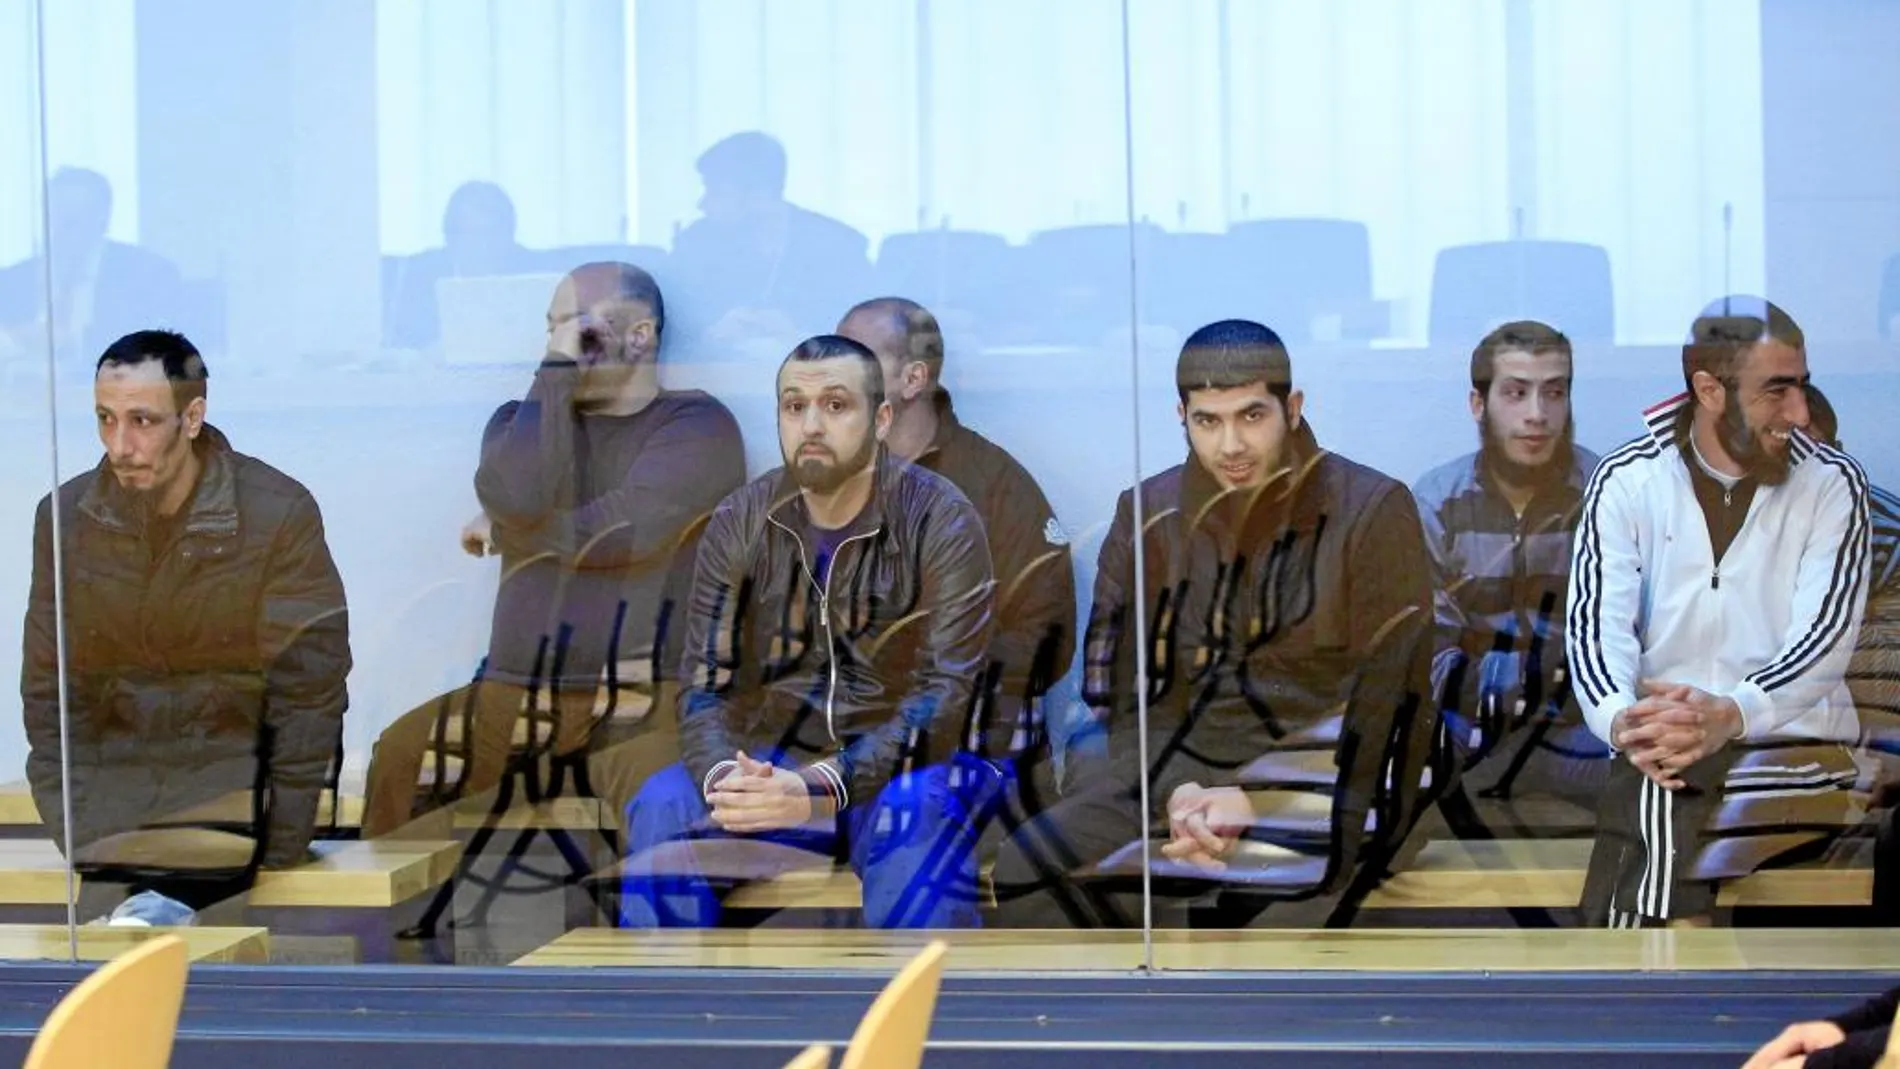 Juicio en la Audiencia Nacional contra la primera célula yihadista desarticulada en España